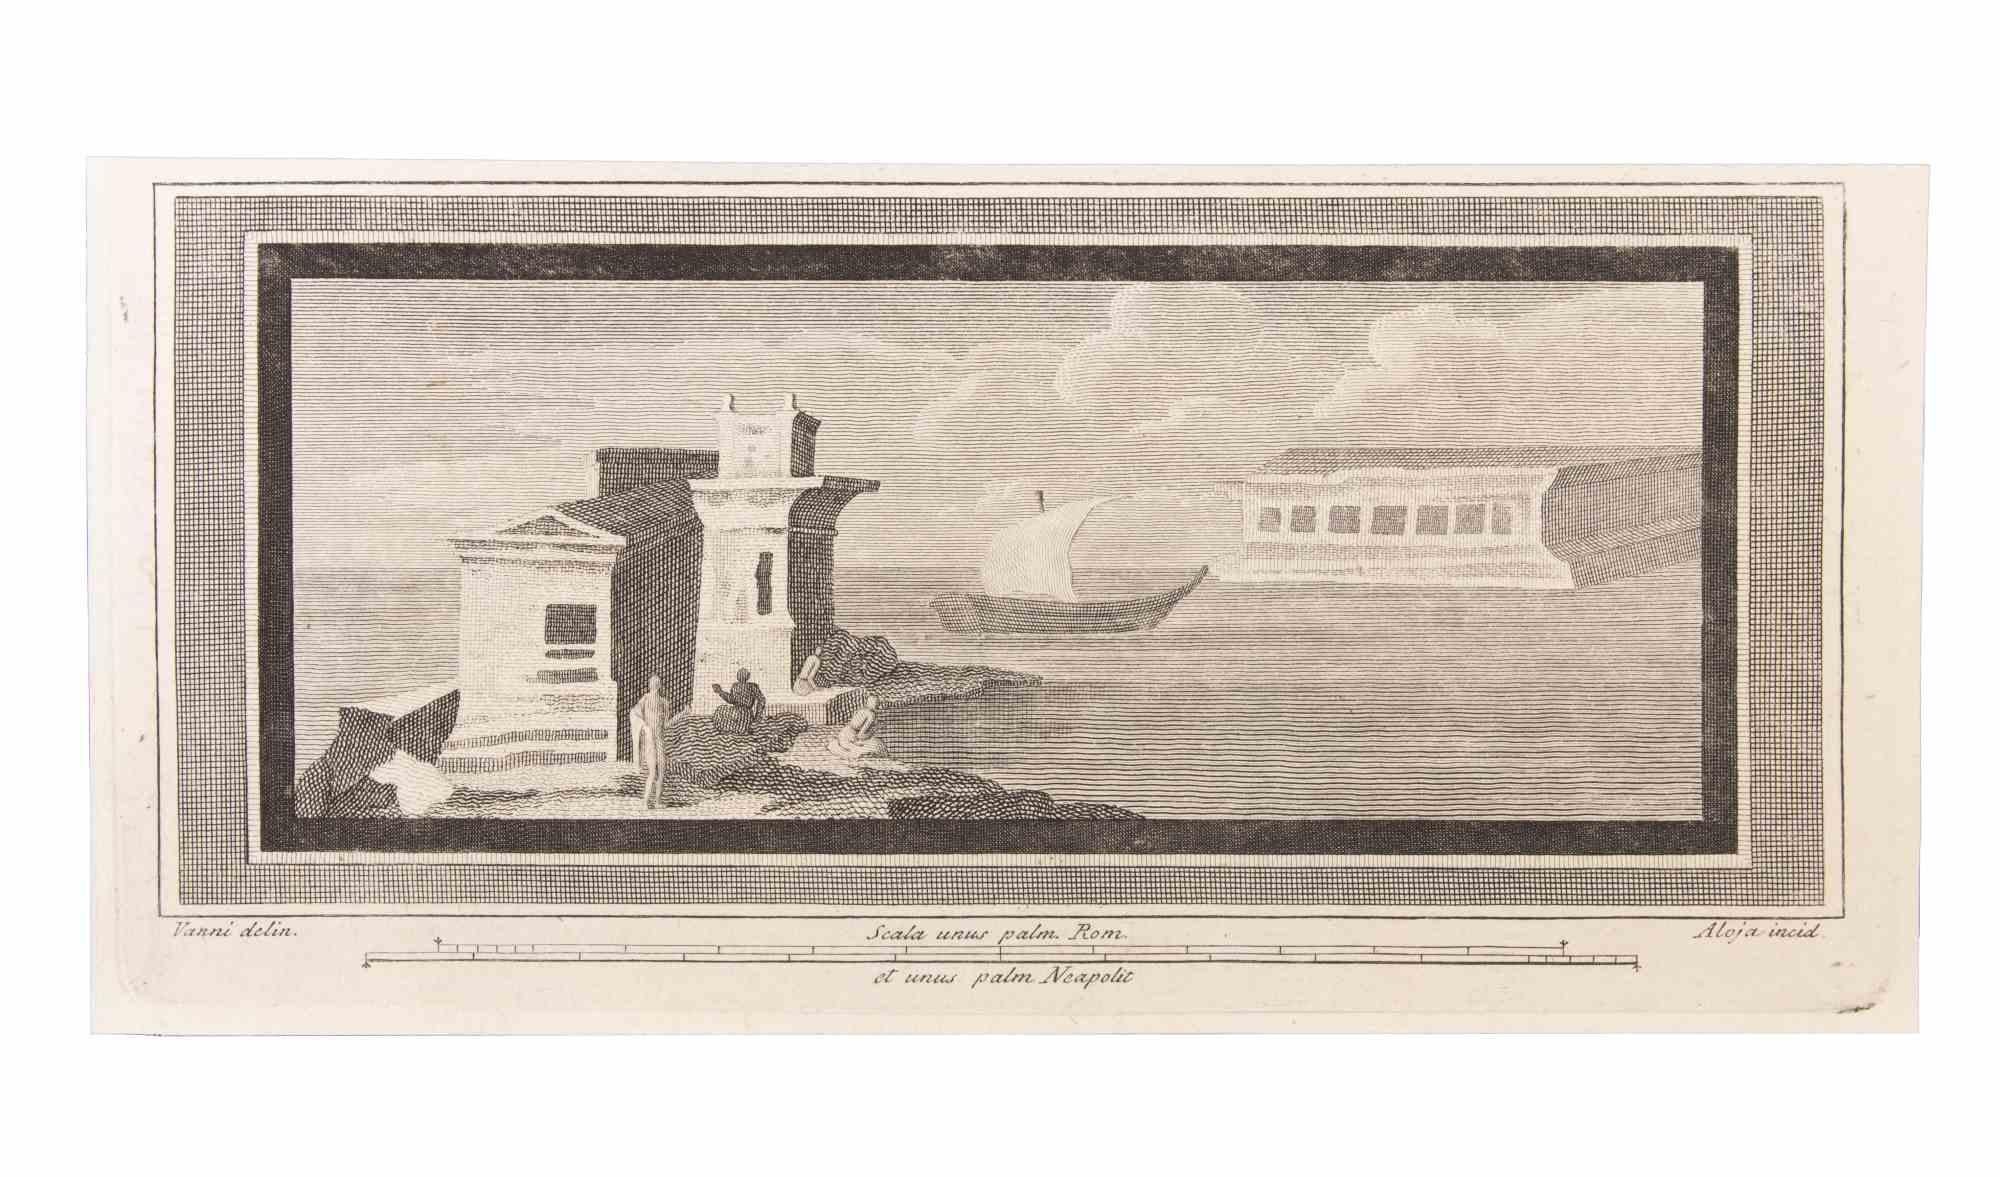 Seascape est une gravure réalisée par  Luigi Aloja (1783-1837).

La gravure appartient à la suite d'estampes "Antiquités d'Herculanum exposées" (titre original : "Le Antichità di Ercolano Esposte"), un volume de huit gravures des découvertes